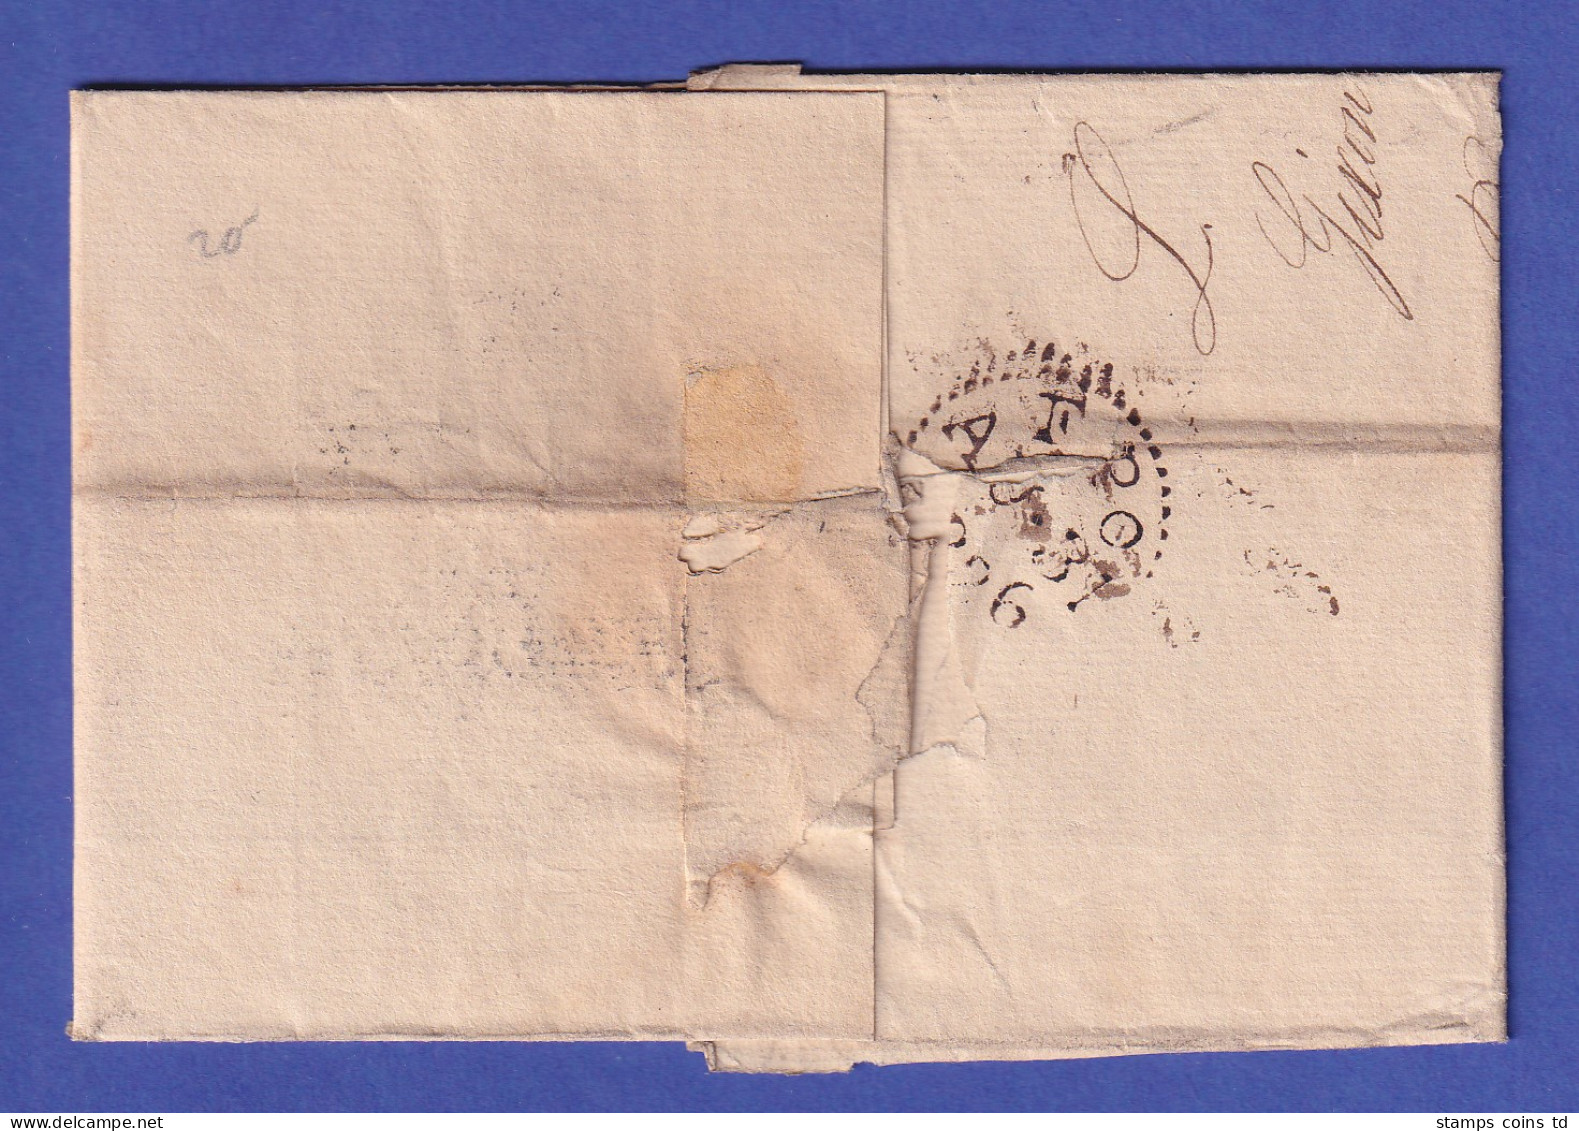 Spanien Vorphila-Brief Mit Zweizeiler GN ASTURIAS Und ESPAGNE PAR BAYONNE 1826 - Sonstige - Europa